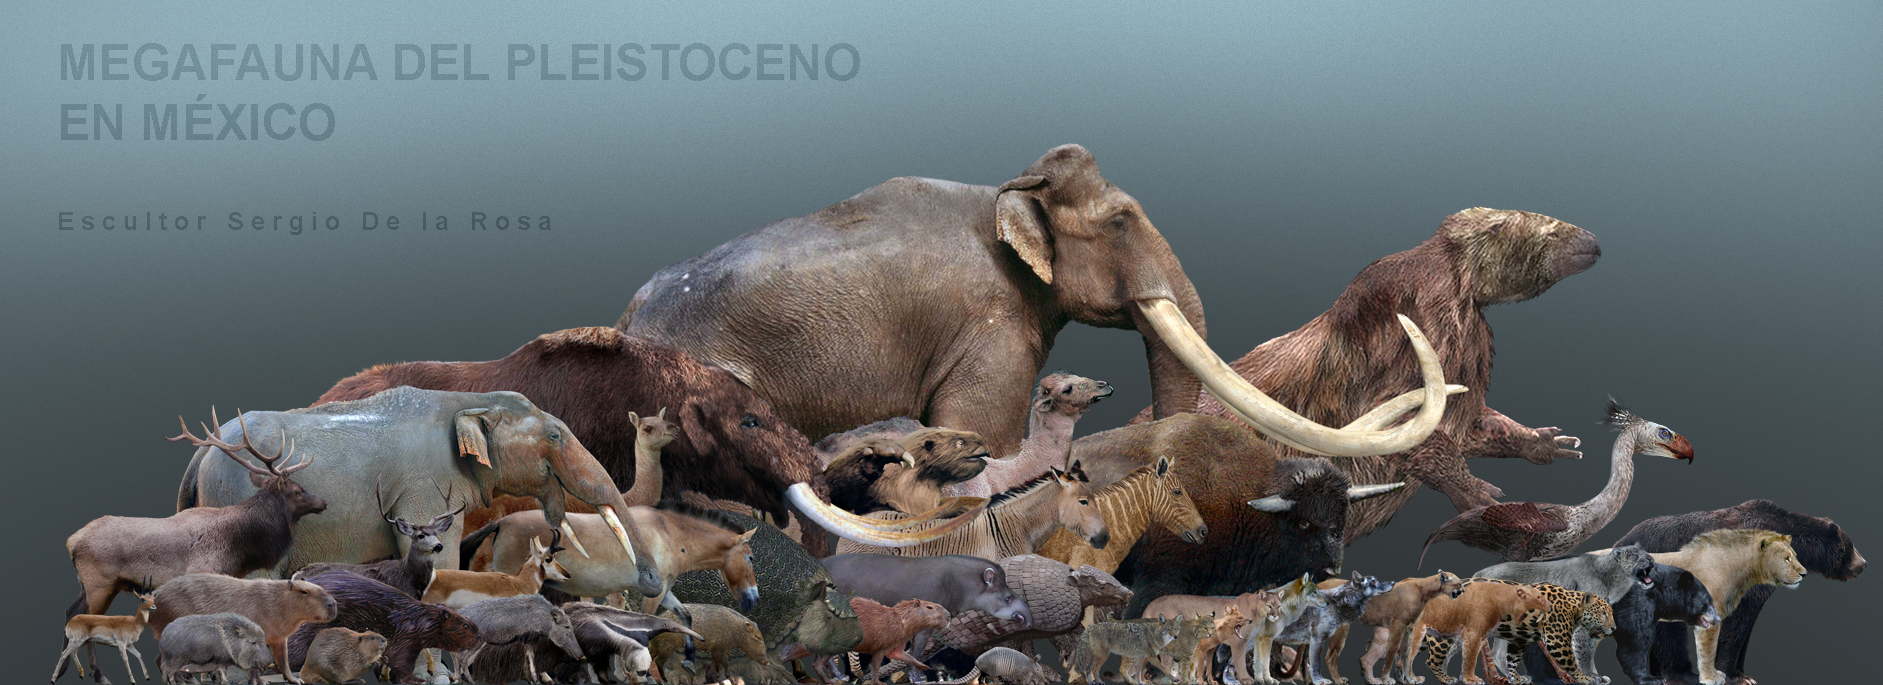 Pleistoceno_en_Mexico_by_serchio25.jpg